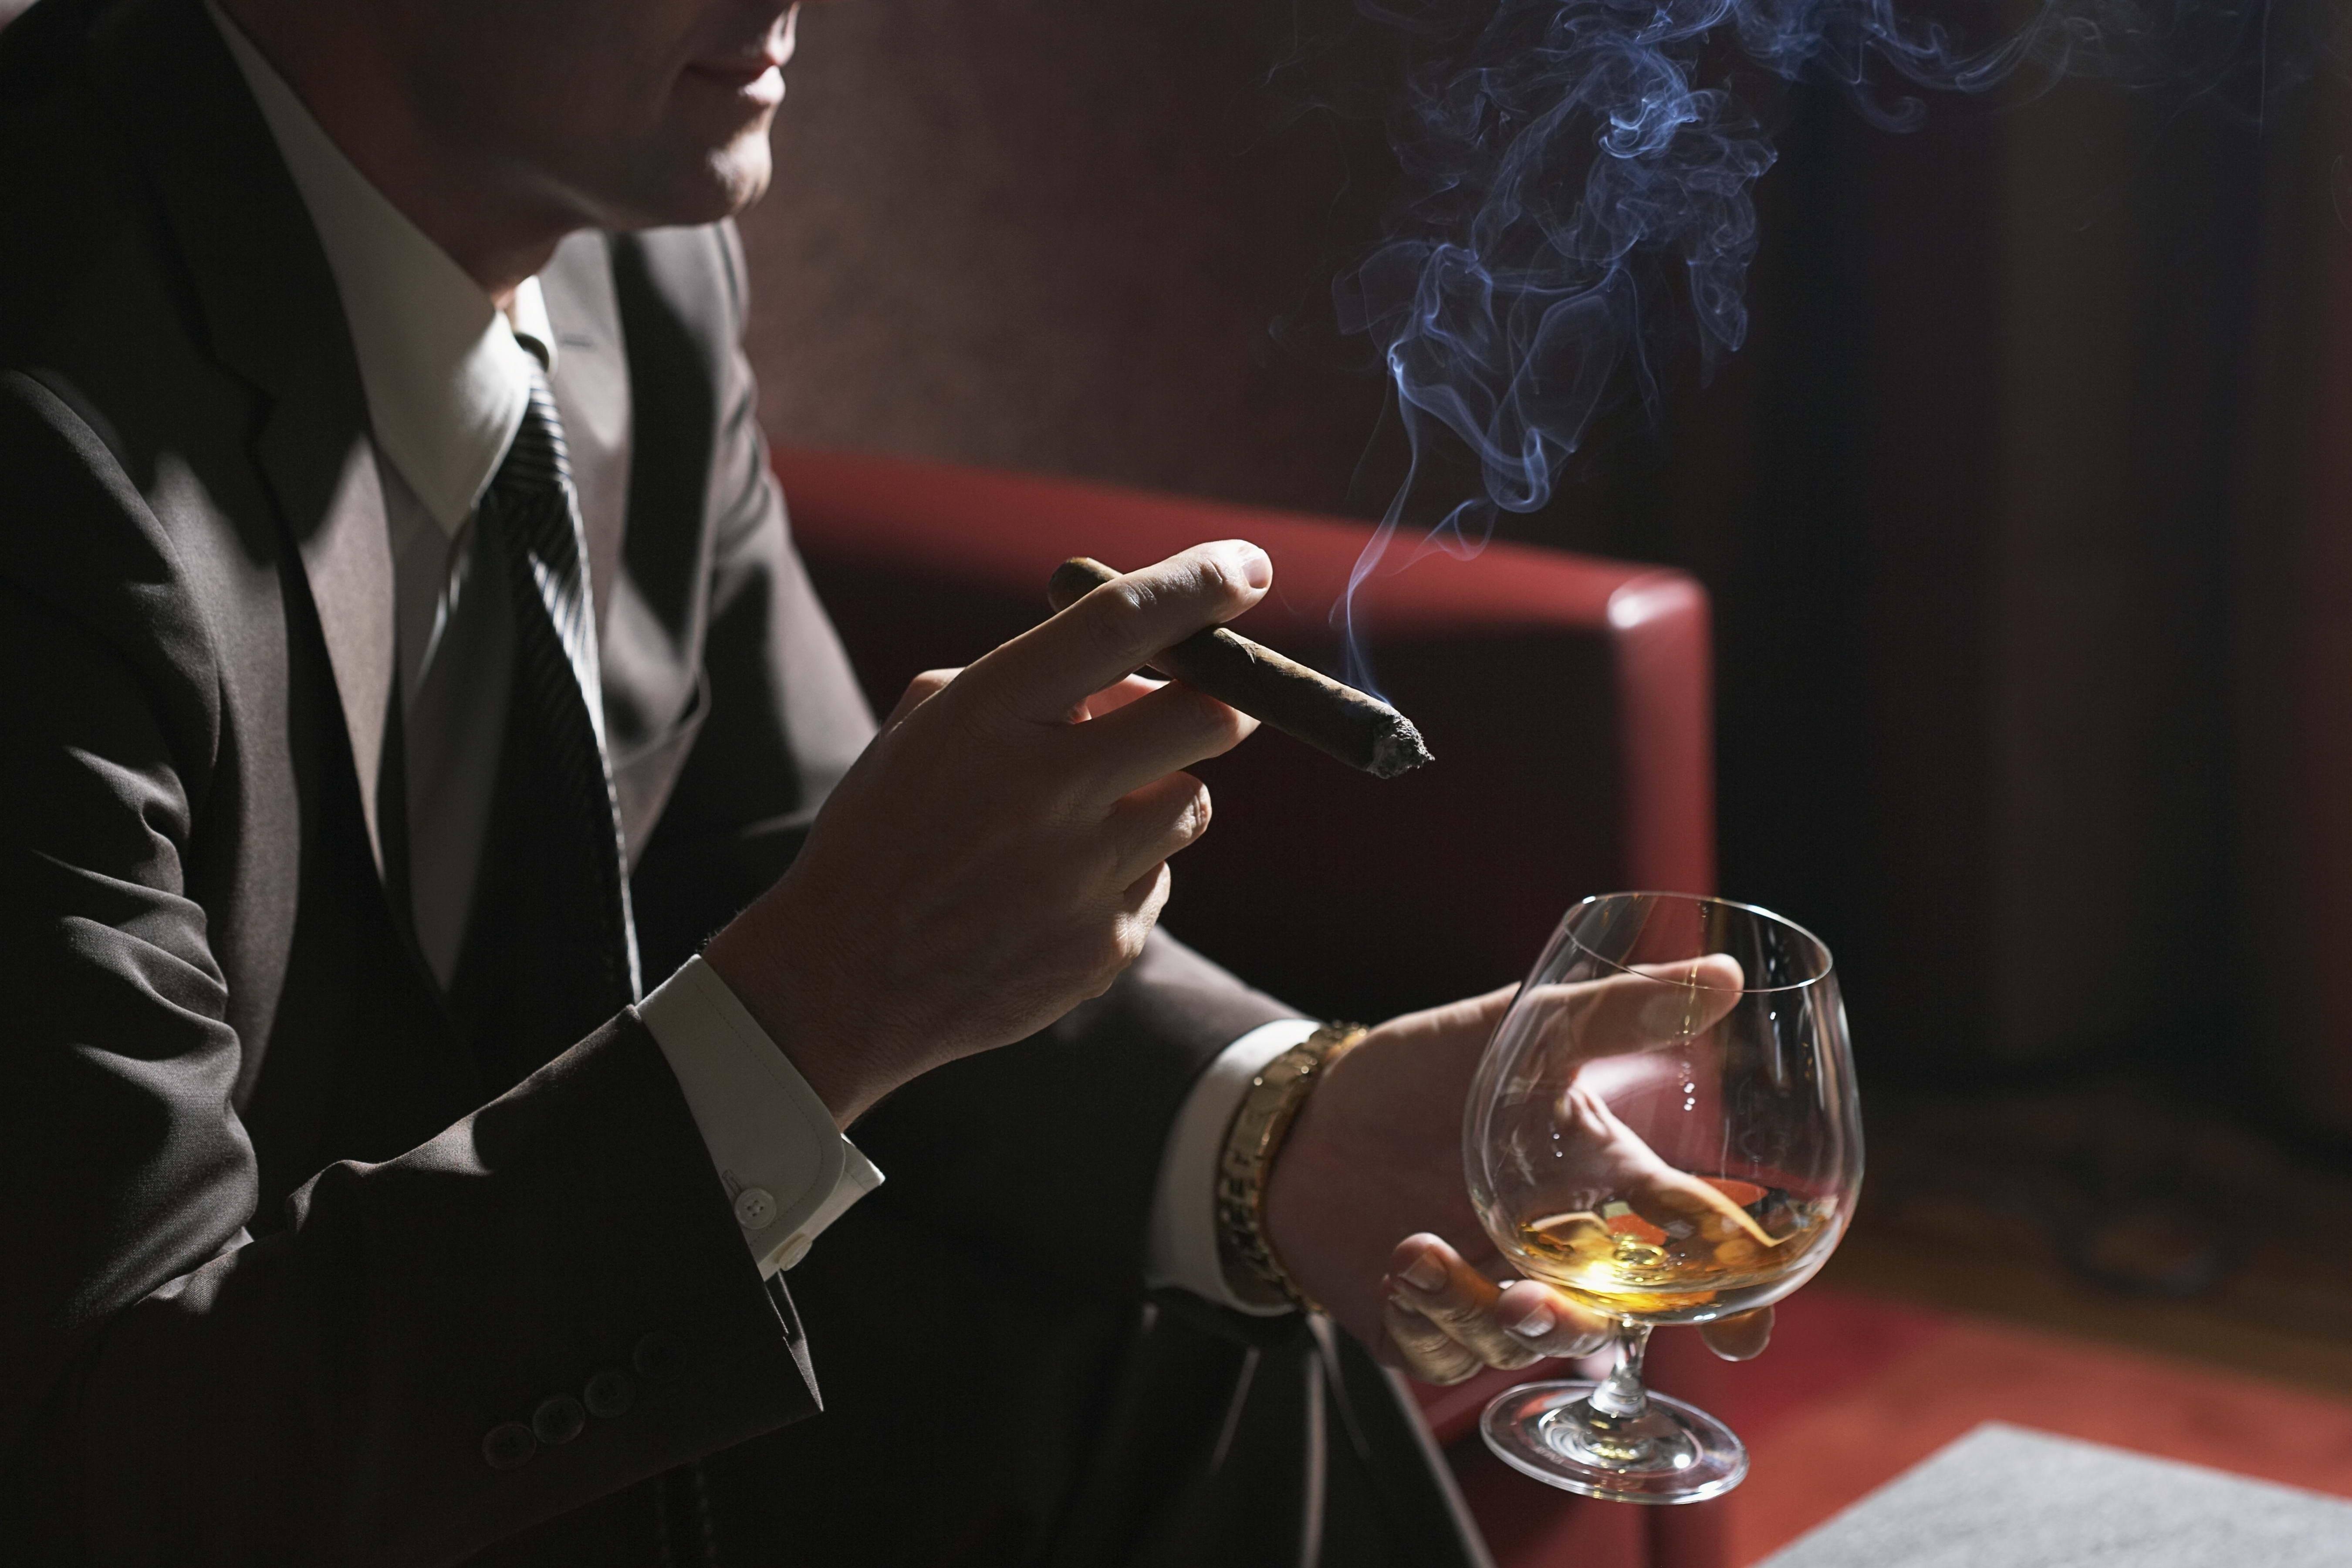 抽烟喝酒的图片 男人图片